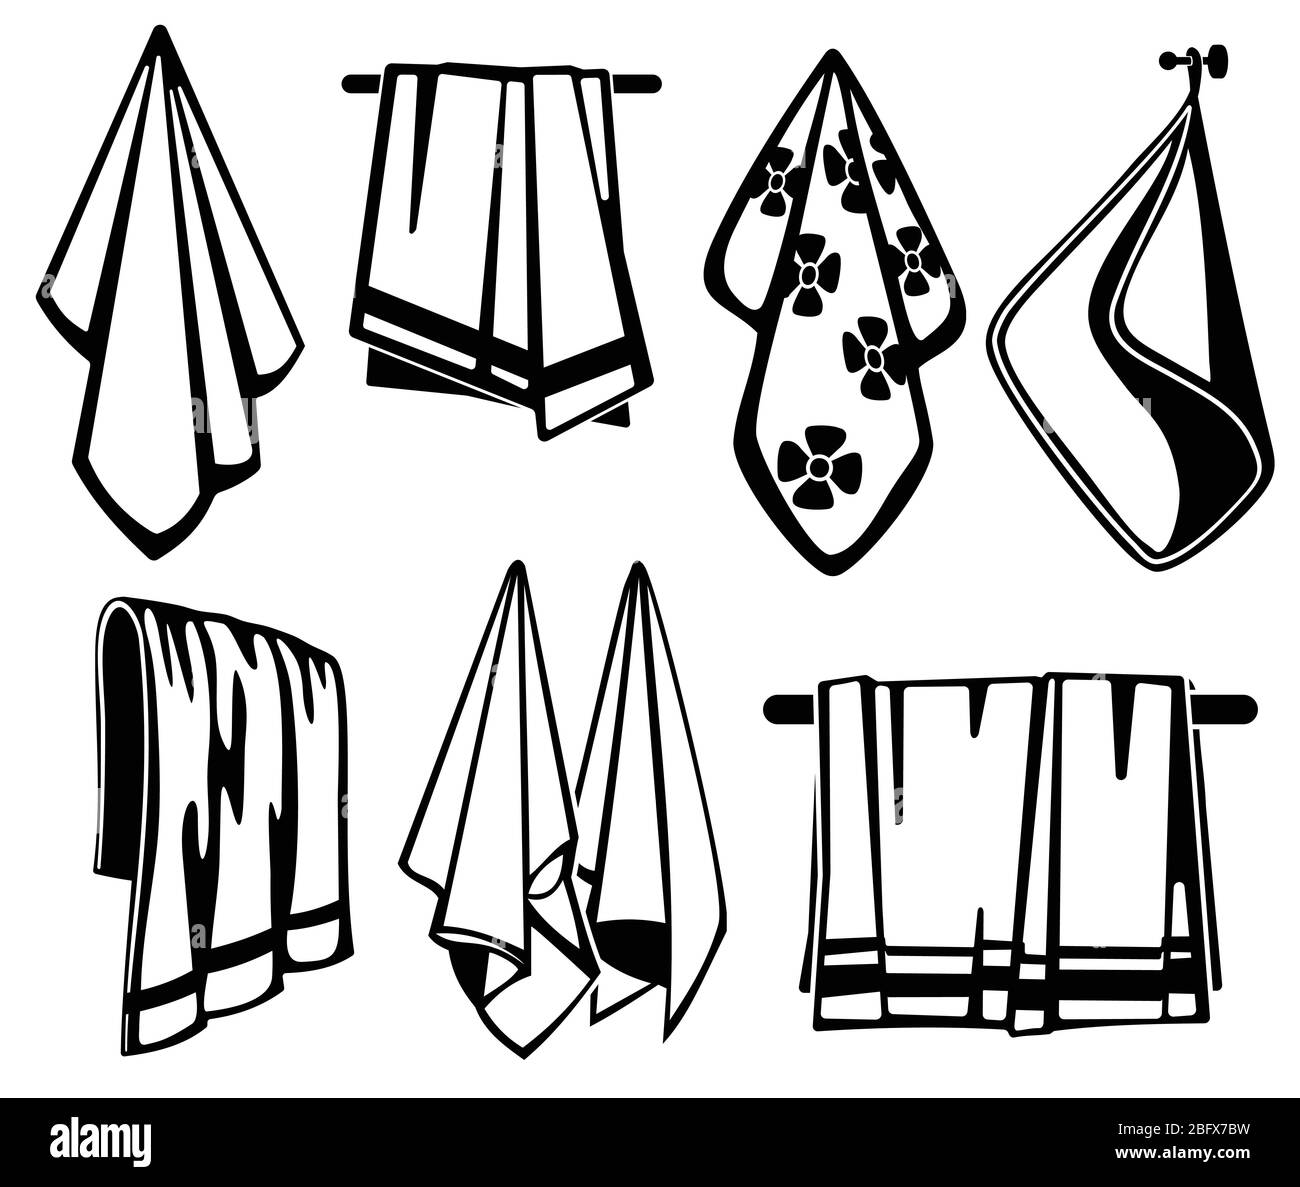 Les serviettes de bain, de plage et de cuisine en tissu doux sont des icônes noires vectorielles. Collection de serviettes pour l'illustration de la plage et du bain Illustration de Vecteur